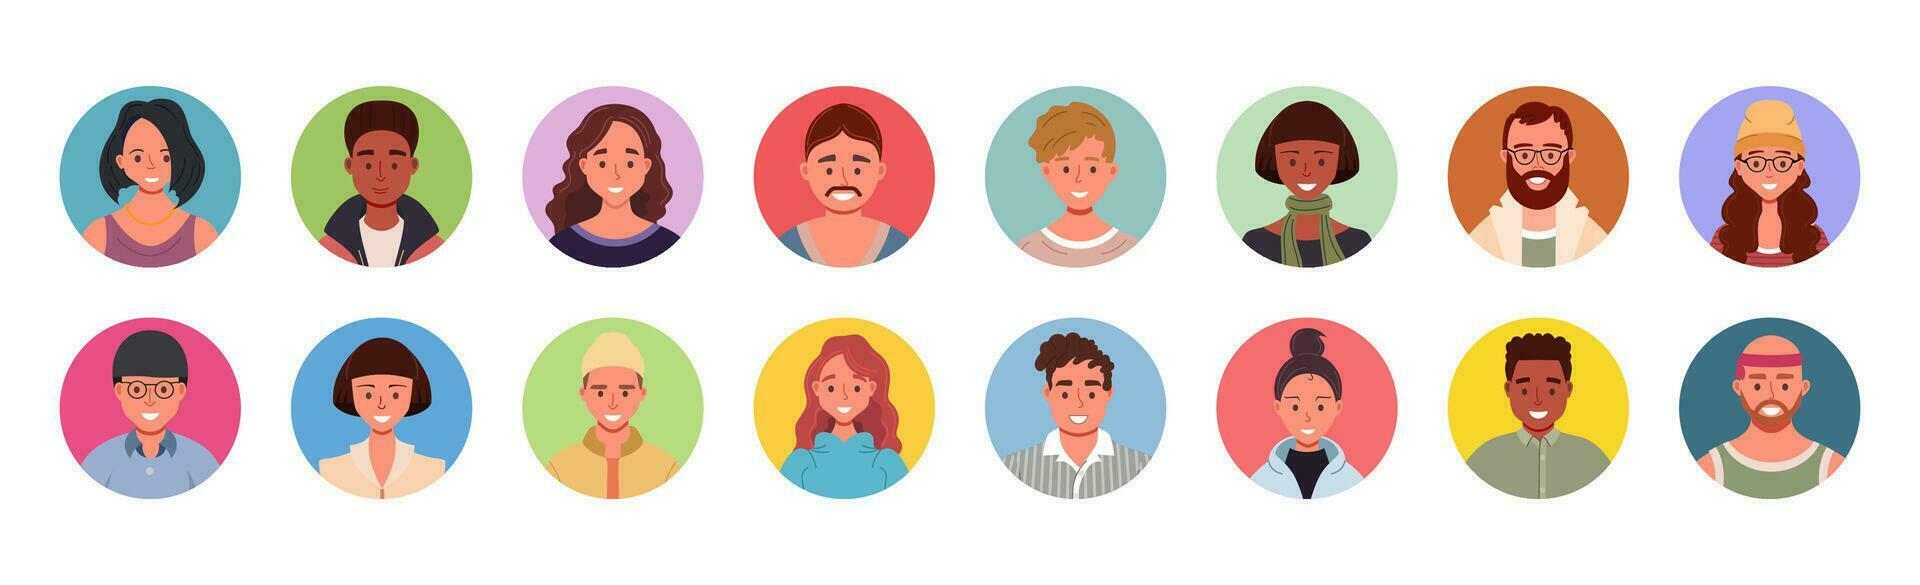 colección de diverso personas avatares en círculos vector ilustración de multiétnico usuario retratos varios humano cara iconos plano dibujos animados masculino y hembra caracteres.